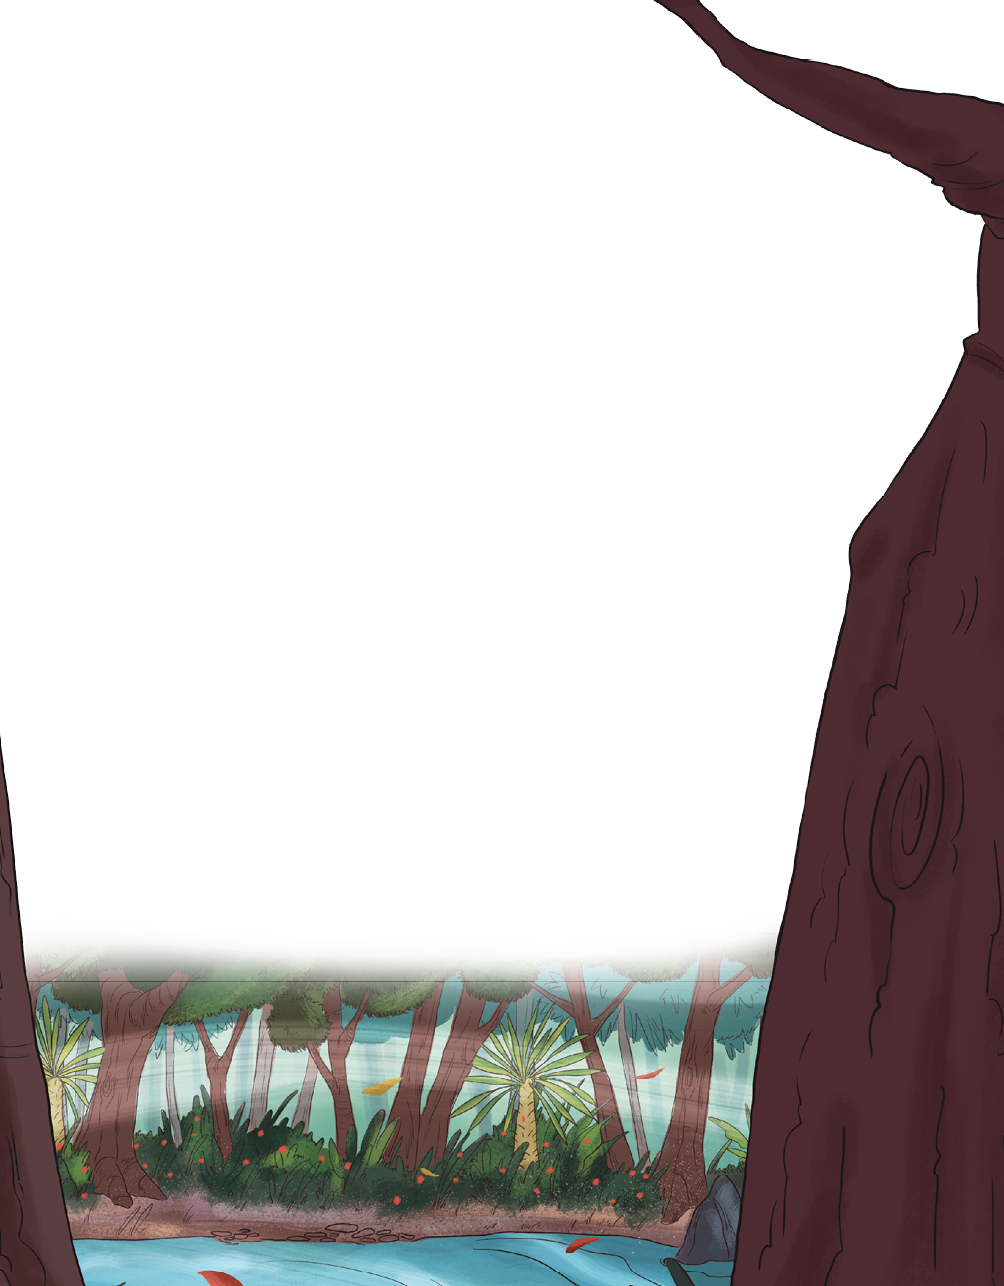 Ilustração. Local com rio à frente, de água de cor azul, com árvores atrás com troncos de cor marrom, vegetação rasteira de cor verde, flores com pétalas em laranja. À direita, vista parcial de um tronco grande de cor marrom, com um galho na ponta superior à esquerda. 